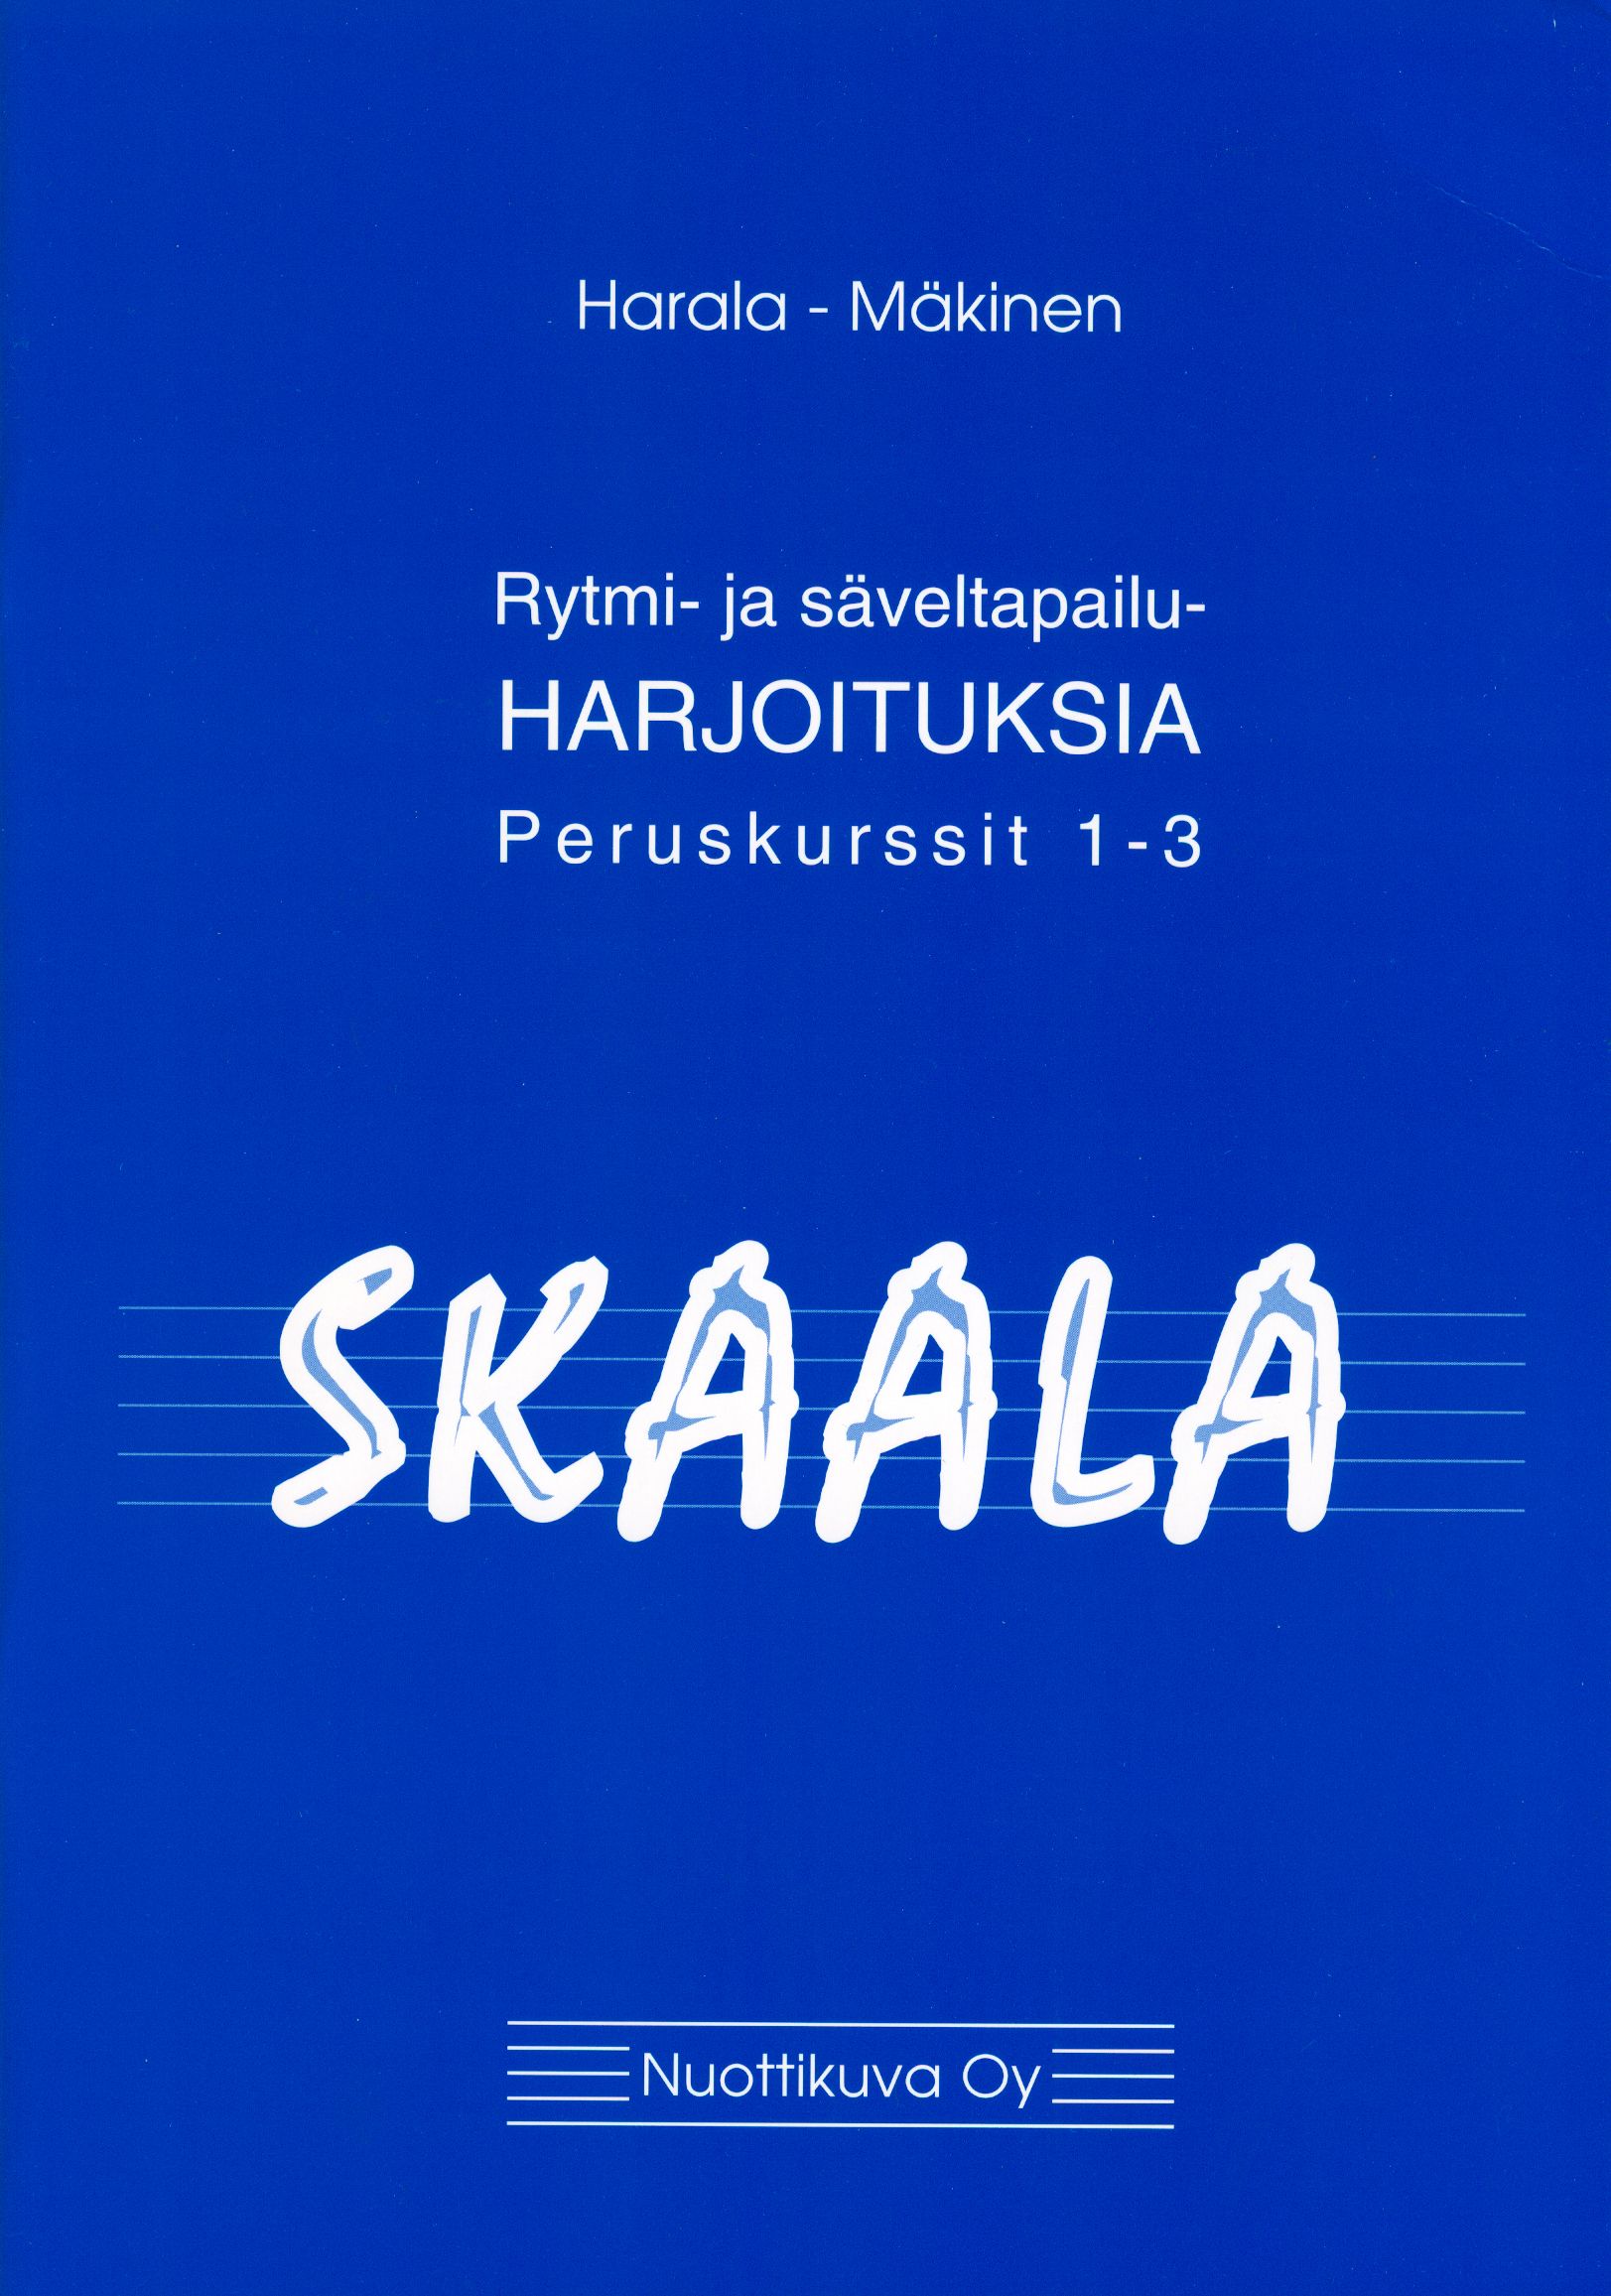 Olli Harala & Tero Mäkinen : Skaala rytmi- ja säveltapailuharjoituksia